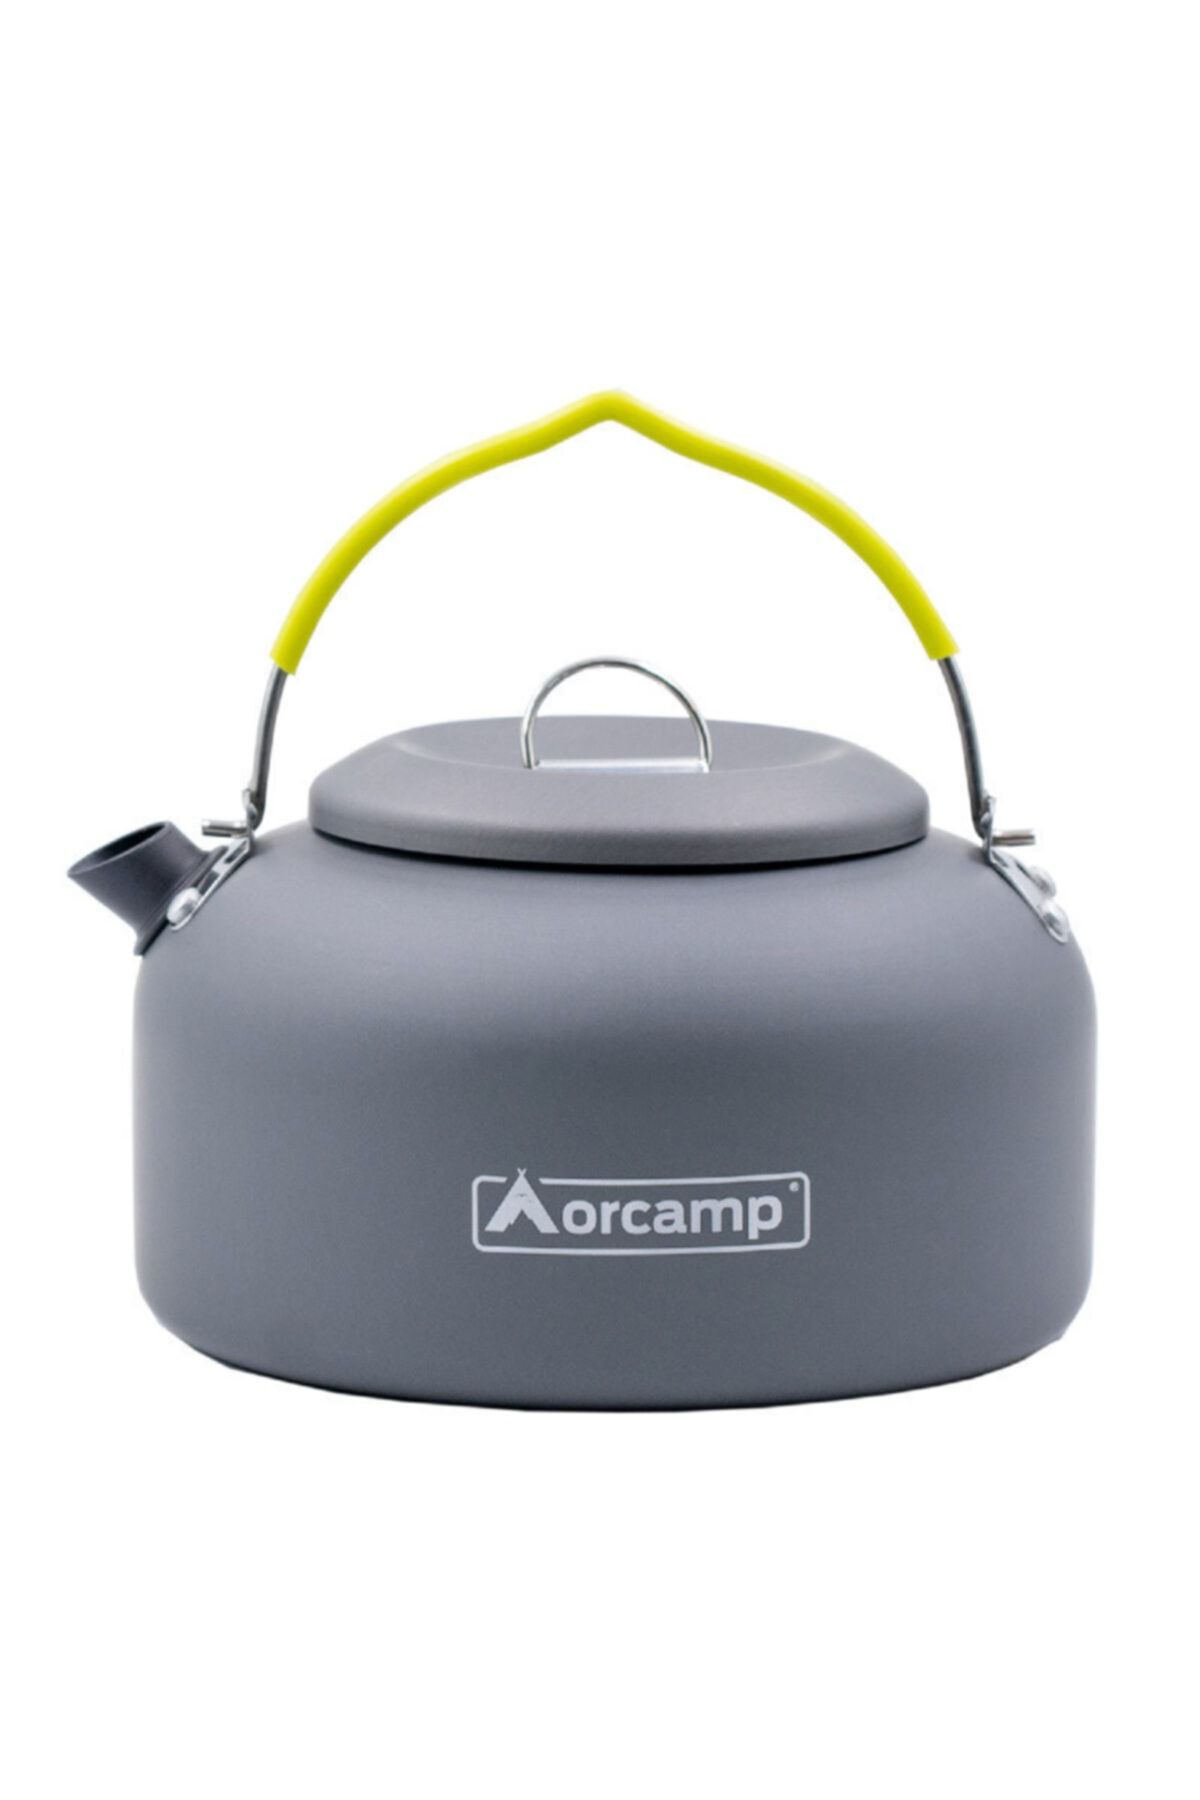 Orcamp Kamp Çaydanlığı -Alüminyum - 1,4 l